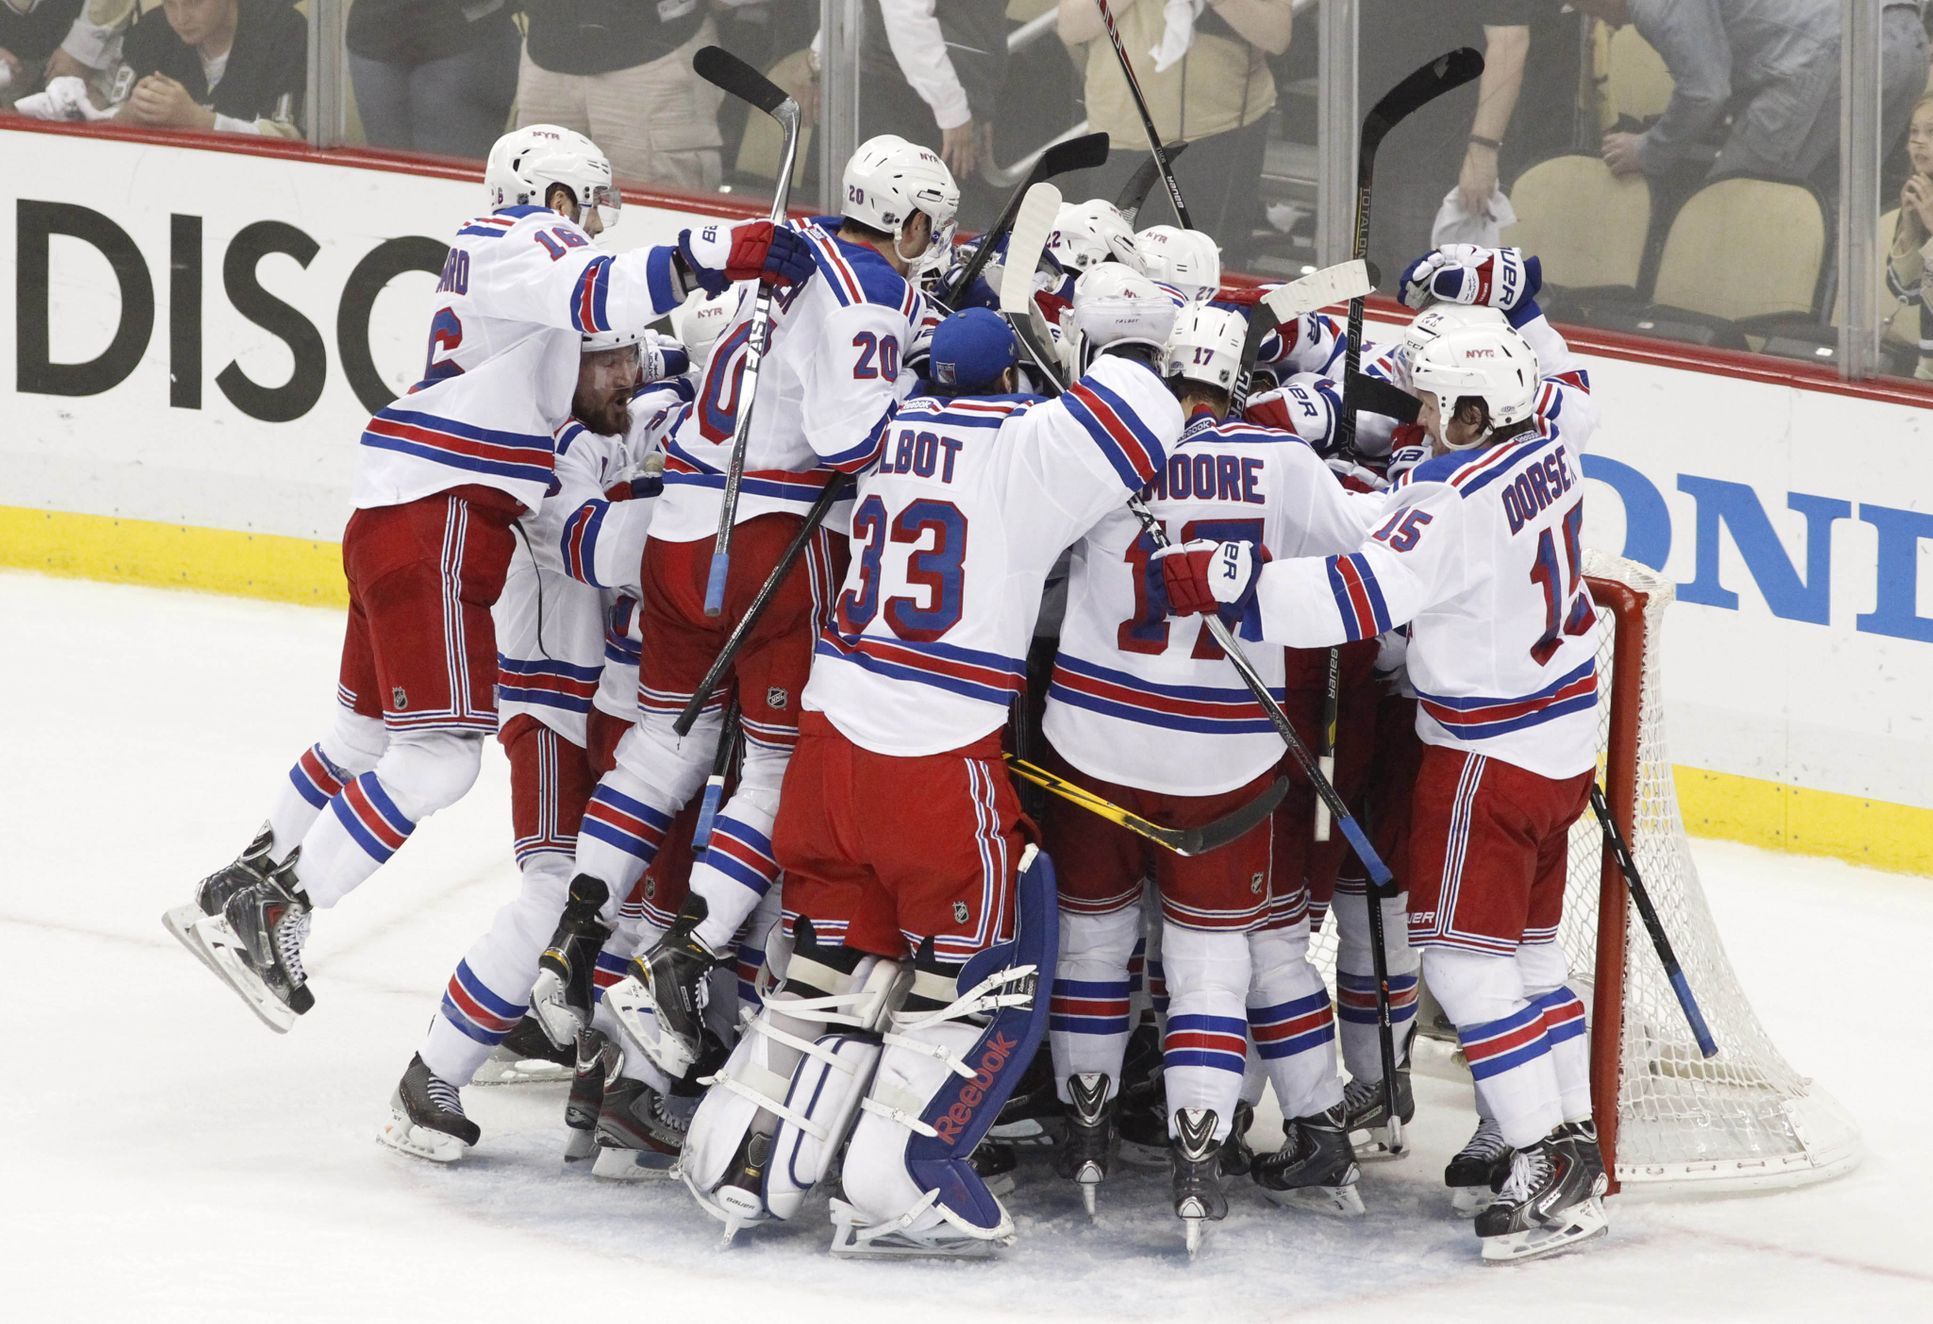 Hráči New Yorku Rangers slaví postup do finále konference